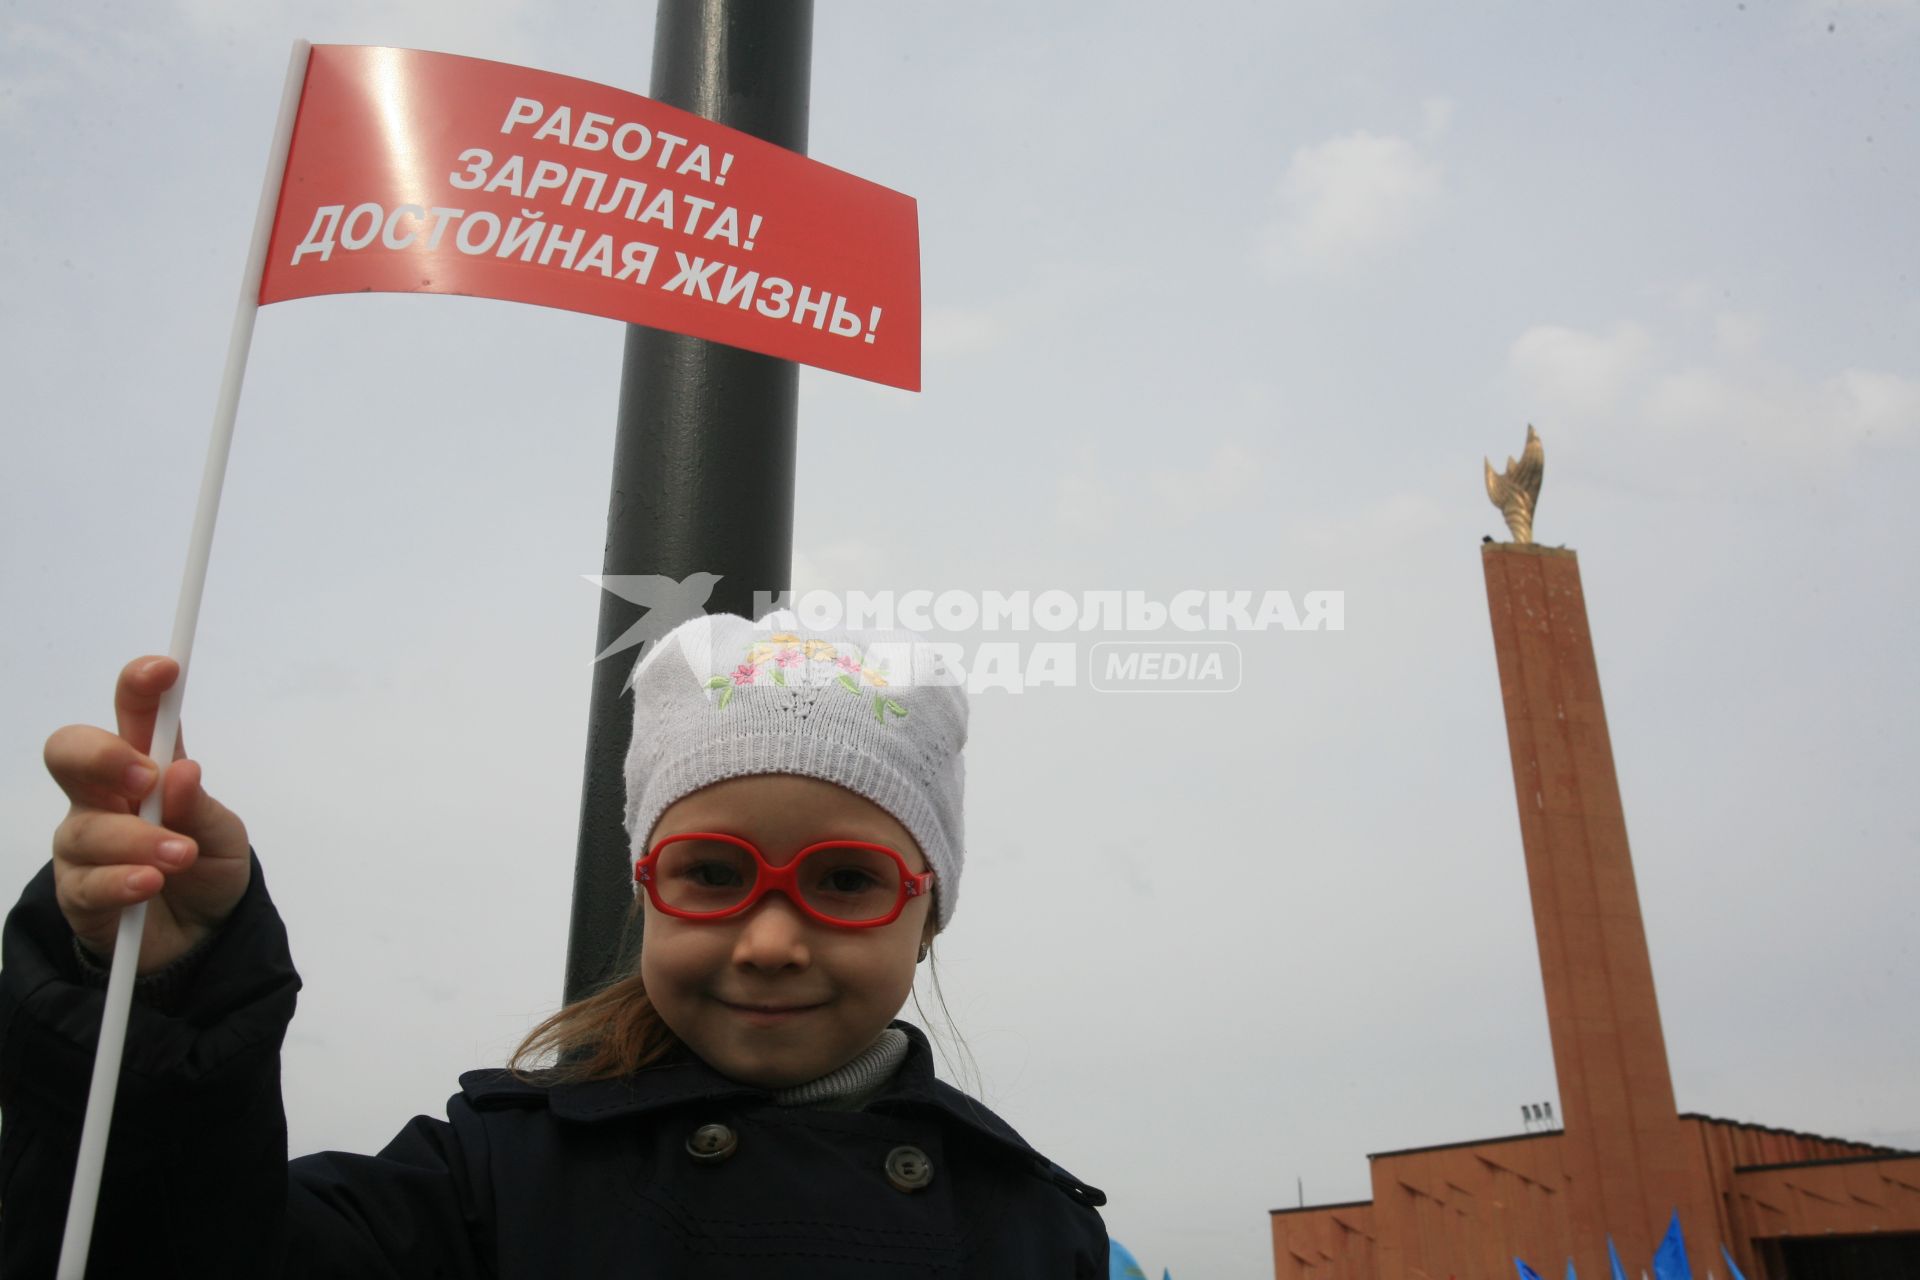 Митинг `Единая Россия` прошел под лозунгом `Достойный труд - достойная зарплата!`. На снимке: девочка с флагом `Работа! Зарплата! Достойная жизнь! `